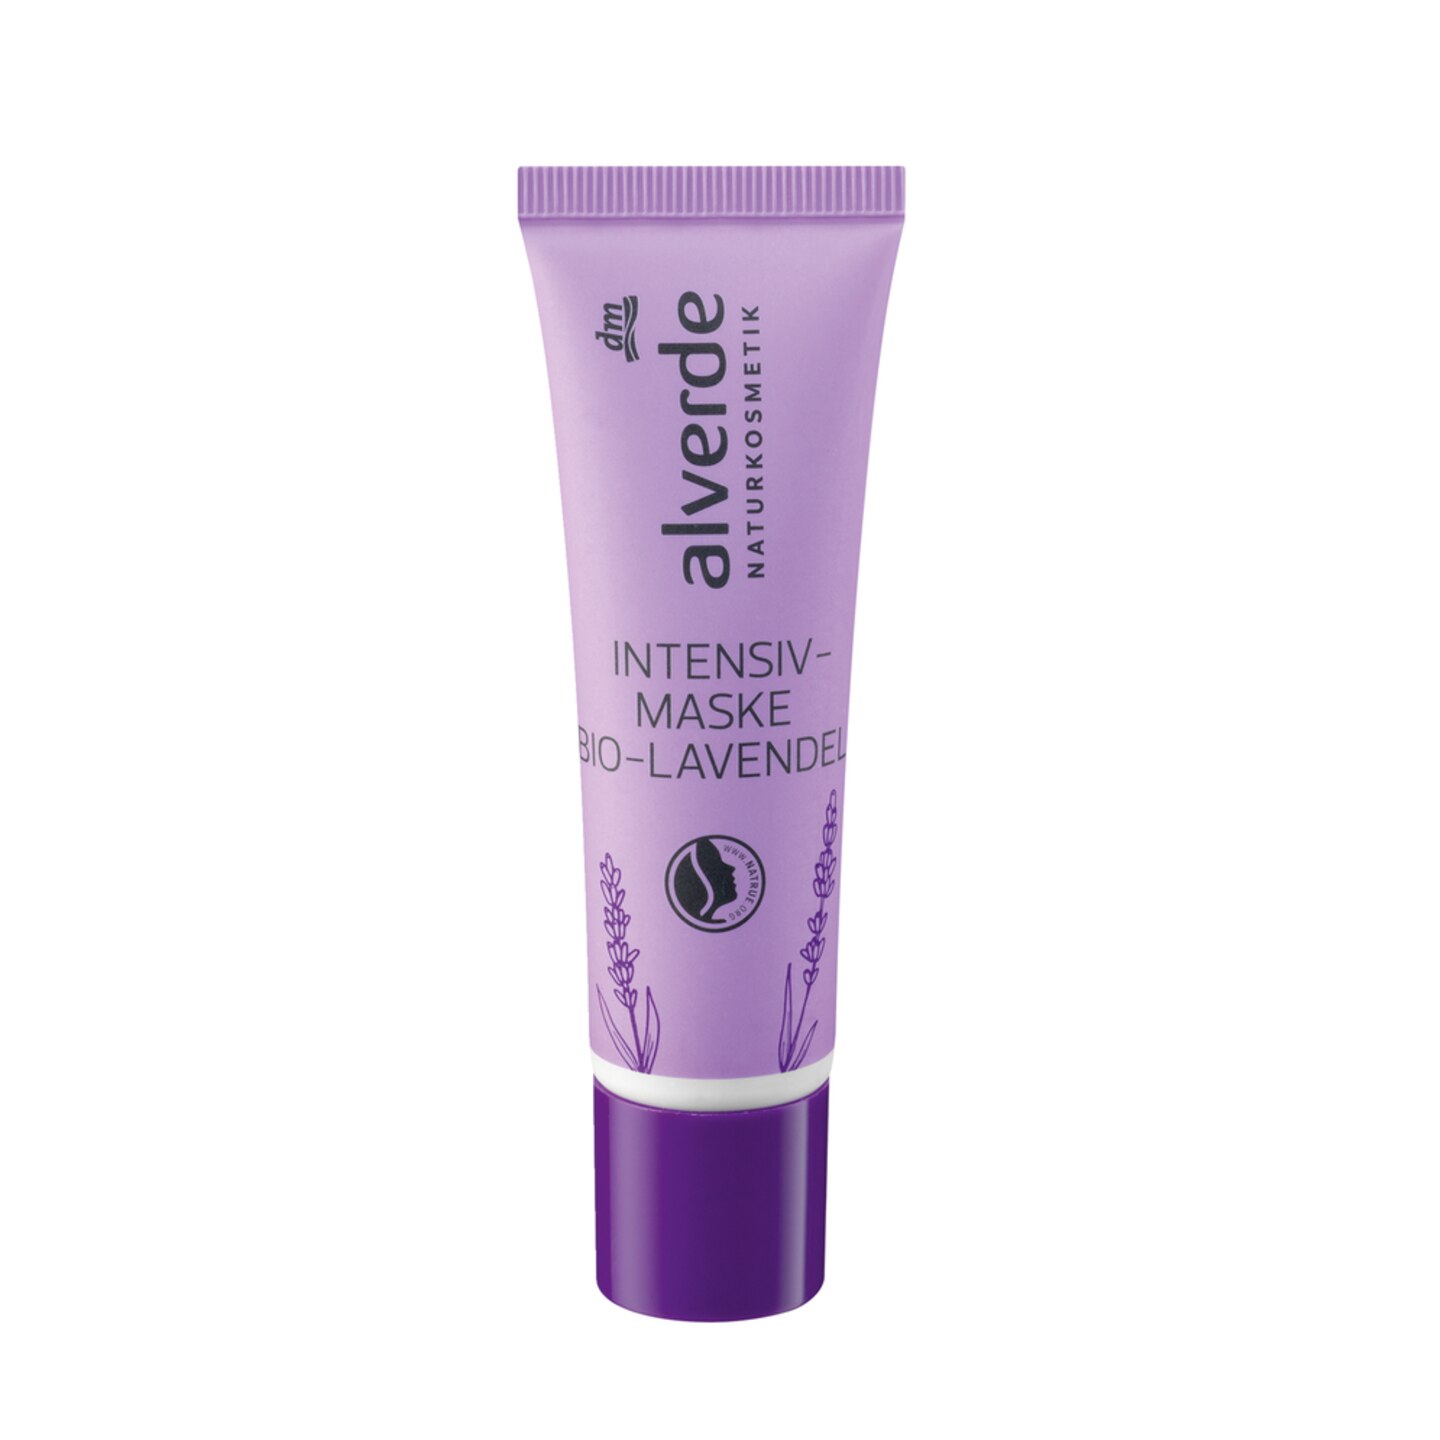 Eine reichhaltige und regenerative Hautpflege mit einem sinnlichen Lavendelduft: Intensivmaske Bio-Lavendel, 30 ml kosten ca. 3 Euro.